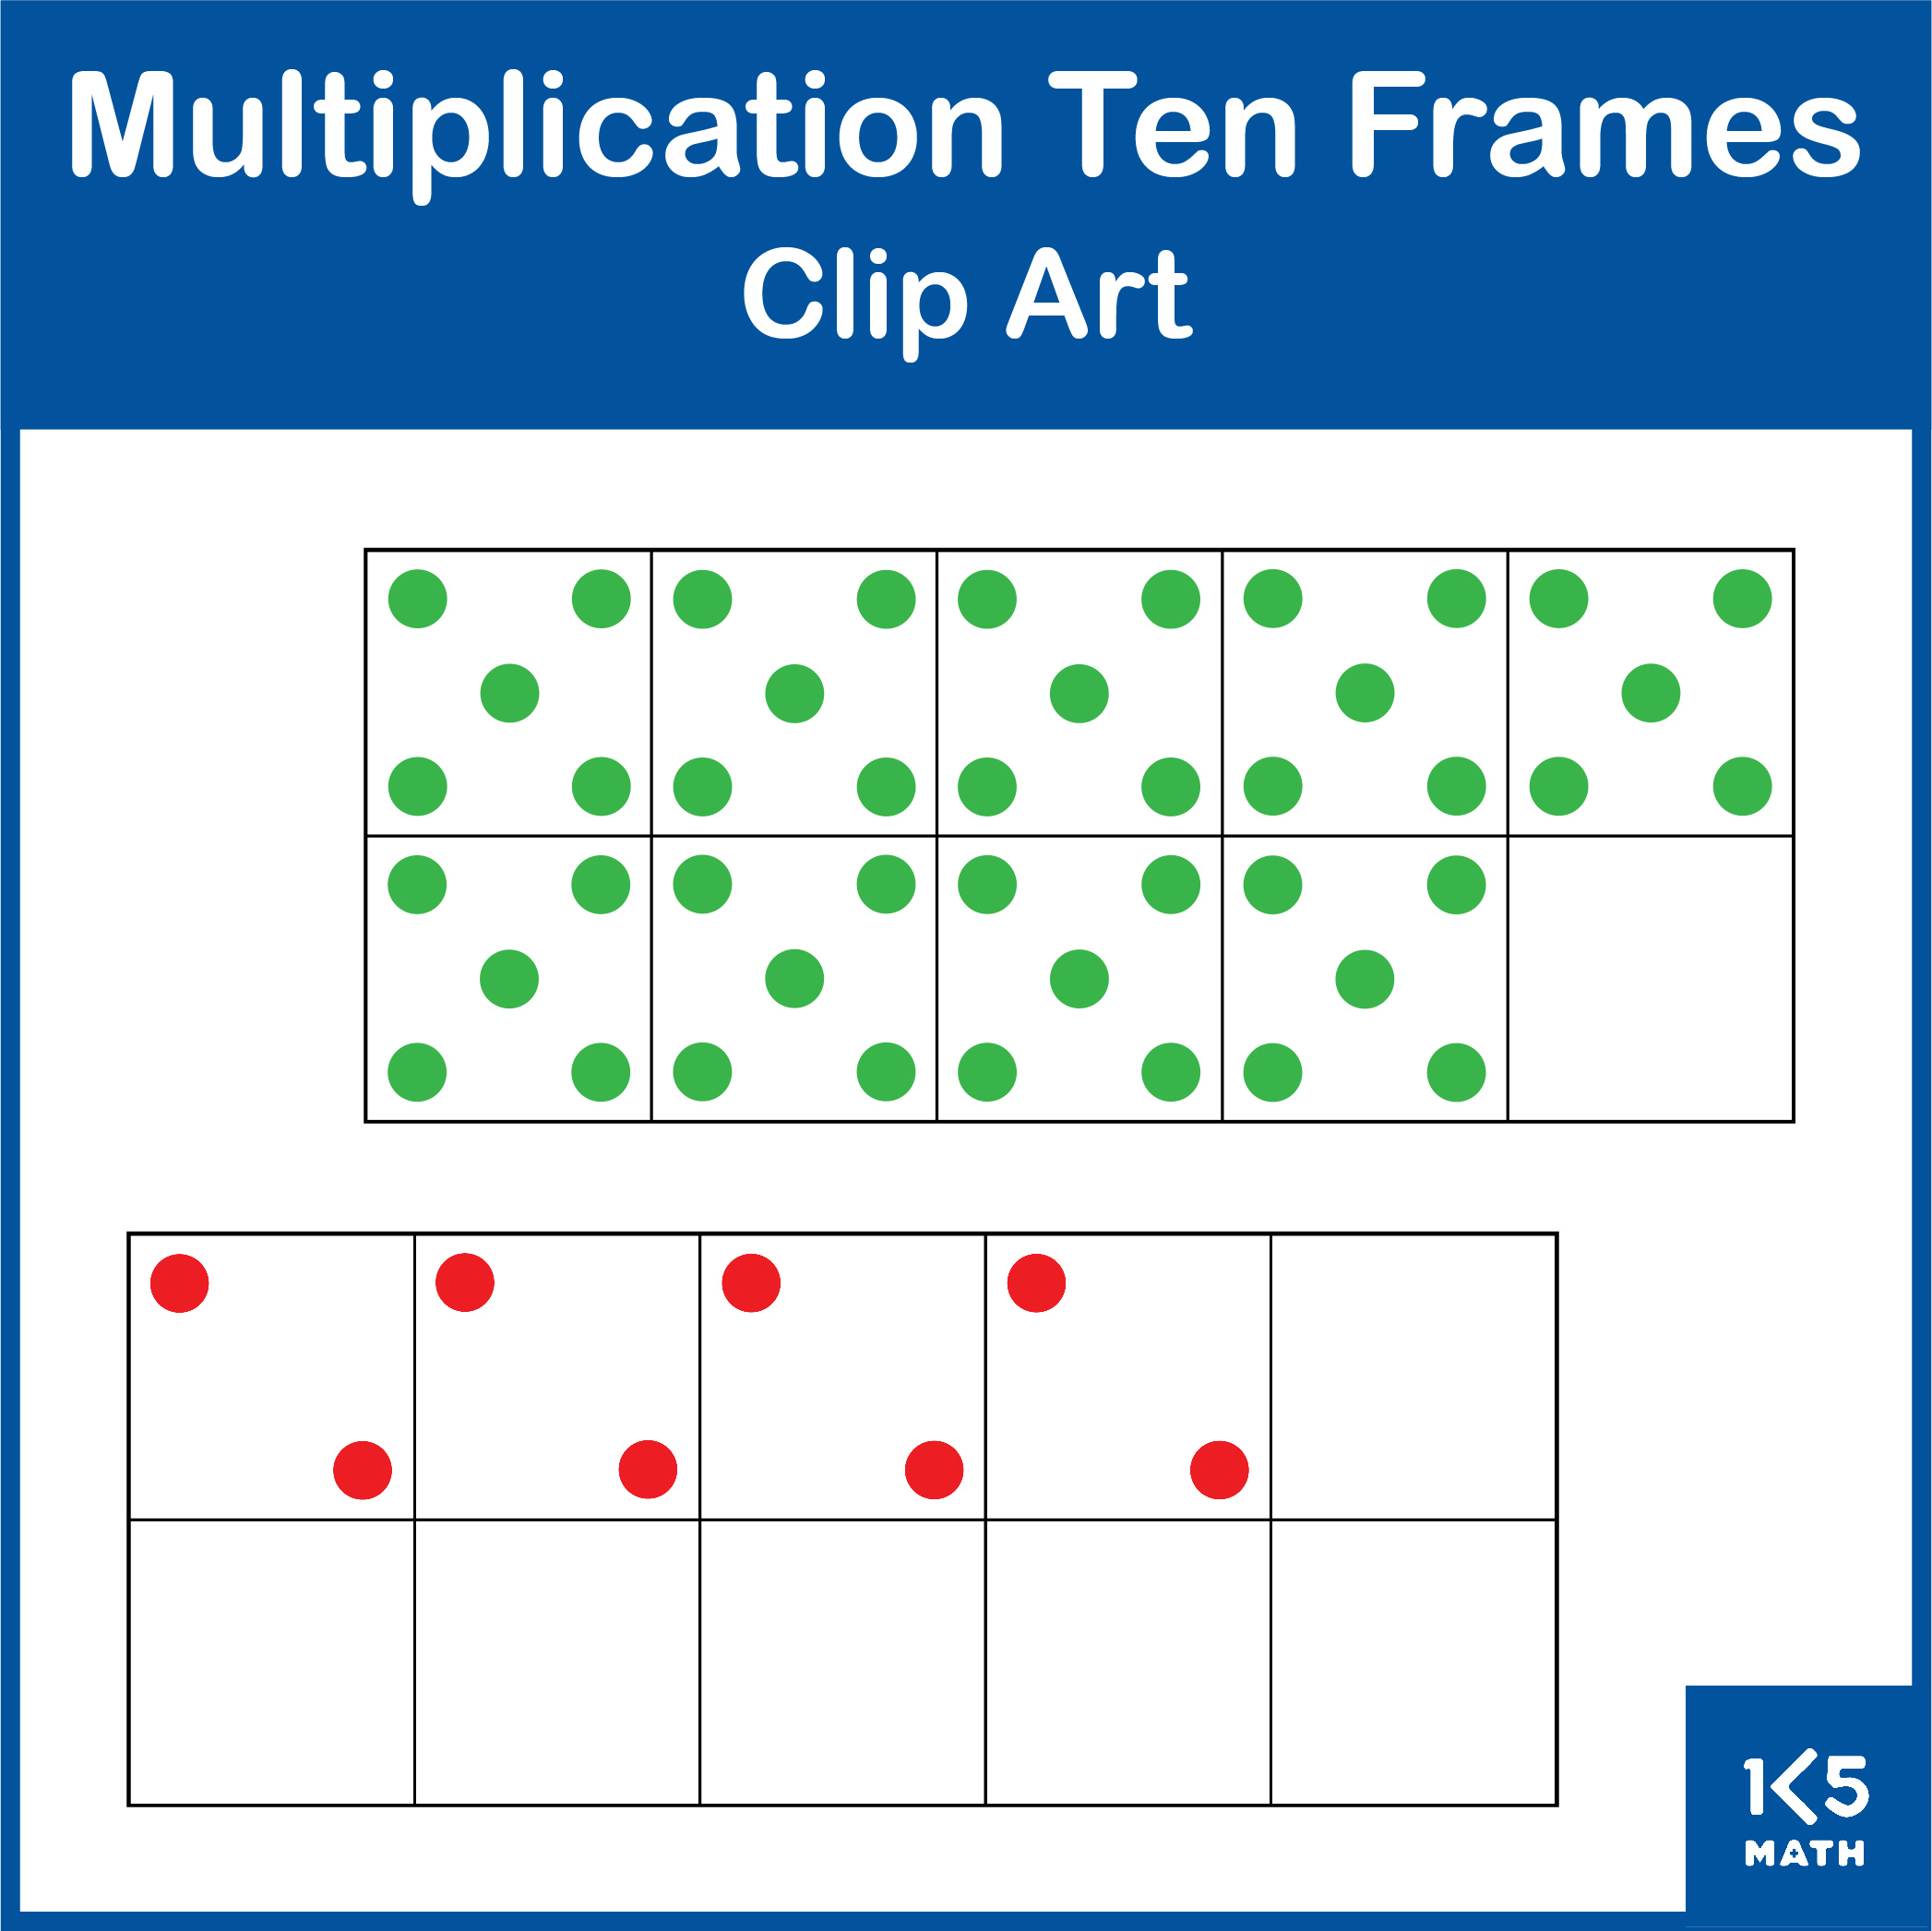 Multiplication Ten Frames Clip Art